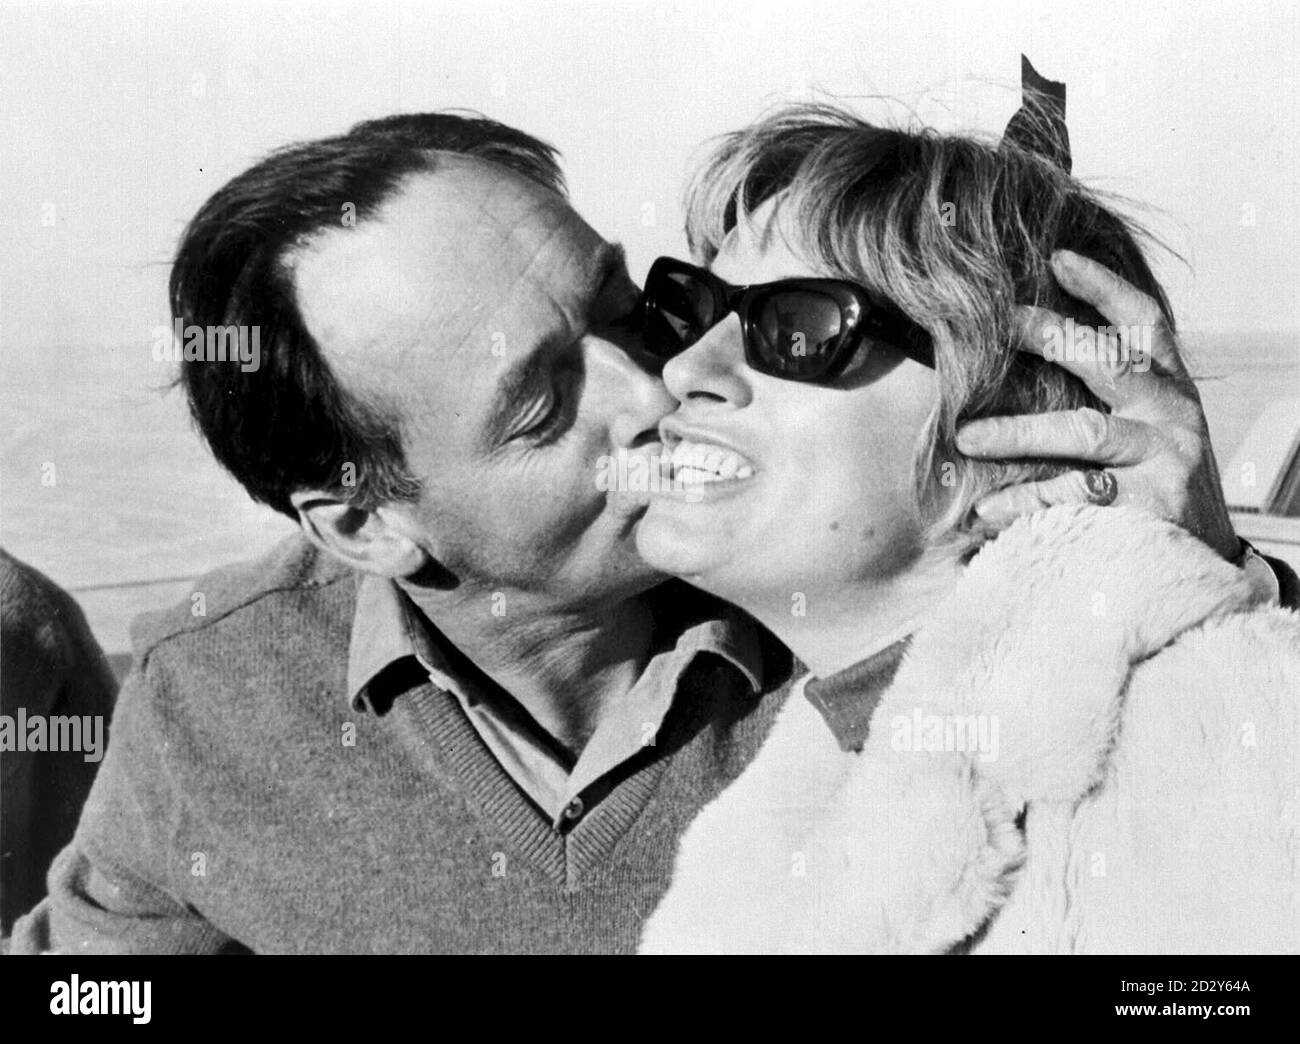 Bibliotheksfiler, Ref. 111164-1, datiert 1964 des Weltrekordbrechers Donald Campbell küsst seine Frau Tonia, nachdem er 403.1 Meilen pro Stunde in seinem Auto Bluebird über die Salzebenen am Lake Eyre, South Australia erreicht hatte. PA-Foto. Nur in Schwarz und Weiß erhältlich. Stockfoto